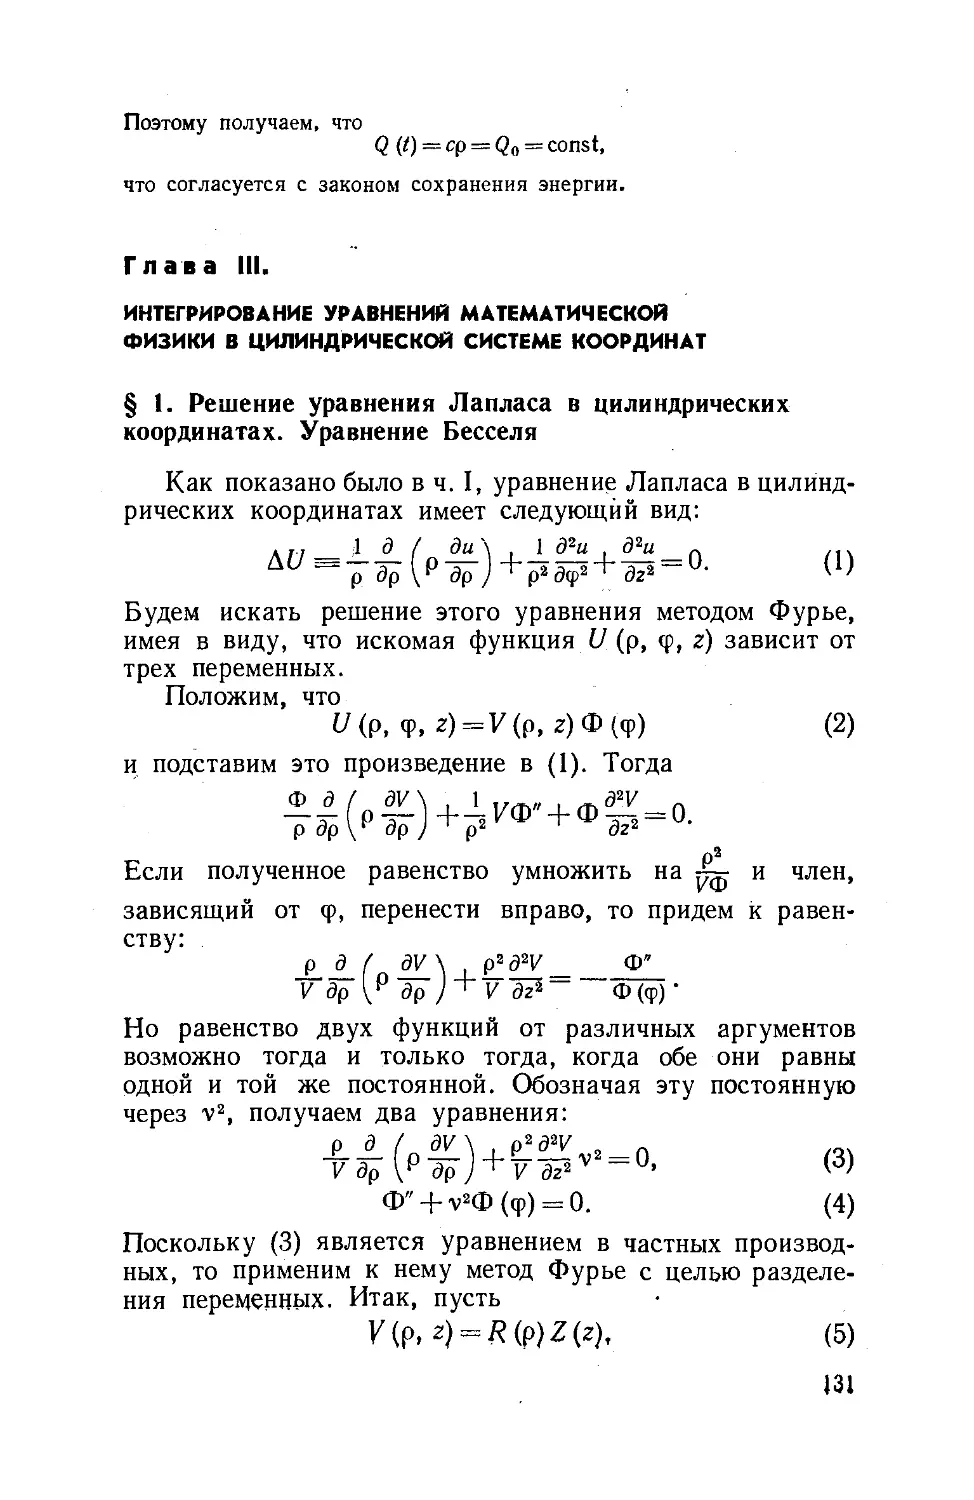 Глава III. Интегрирование уравнений математической физики в цилиндрической системе координат